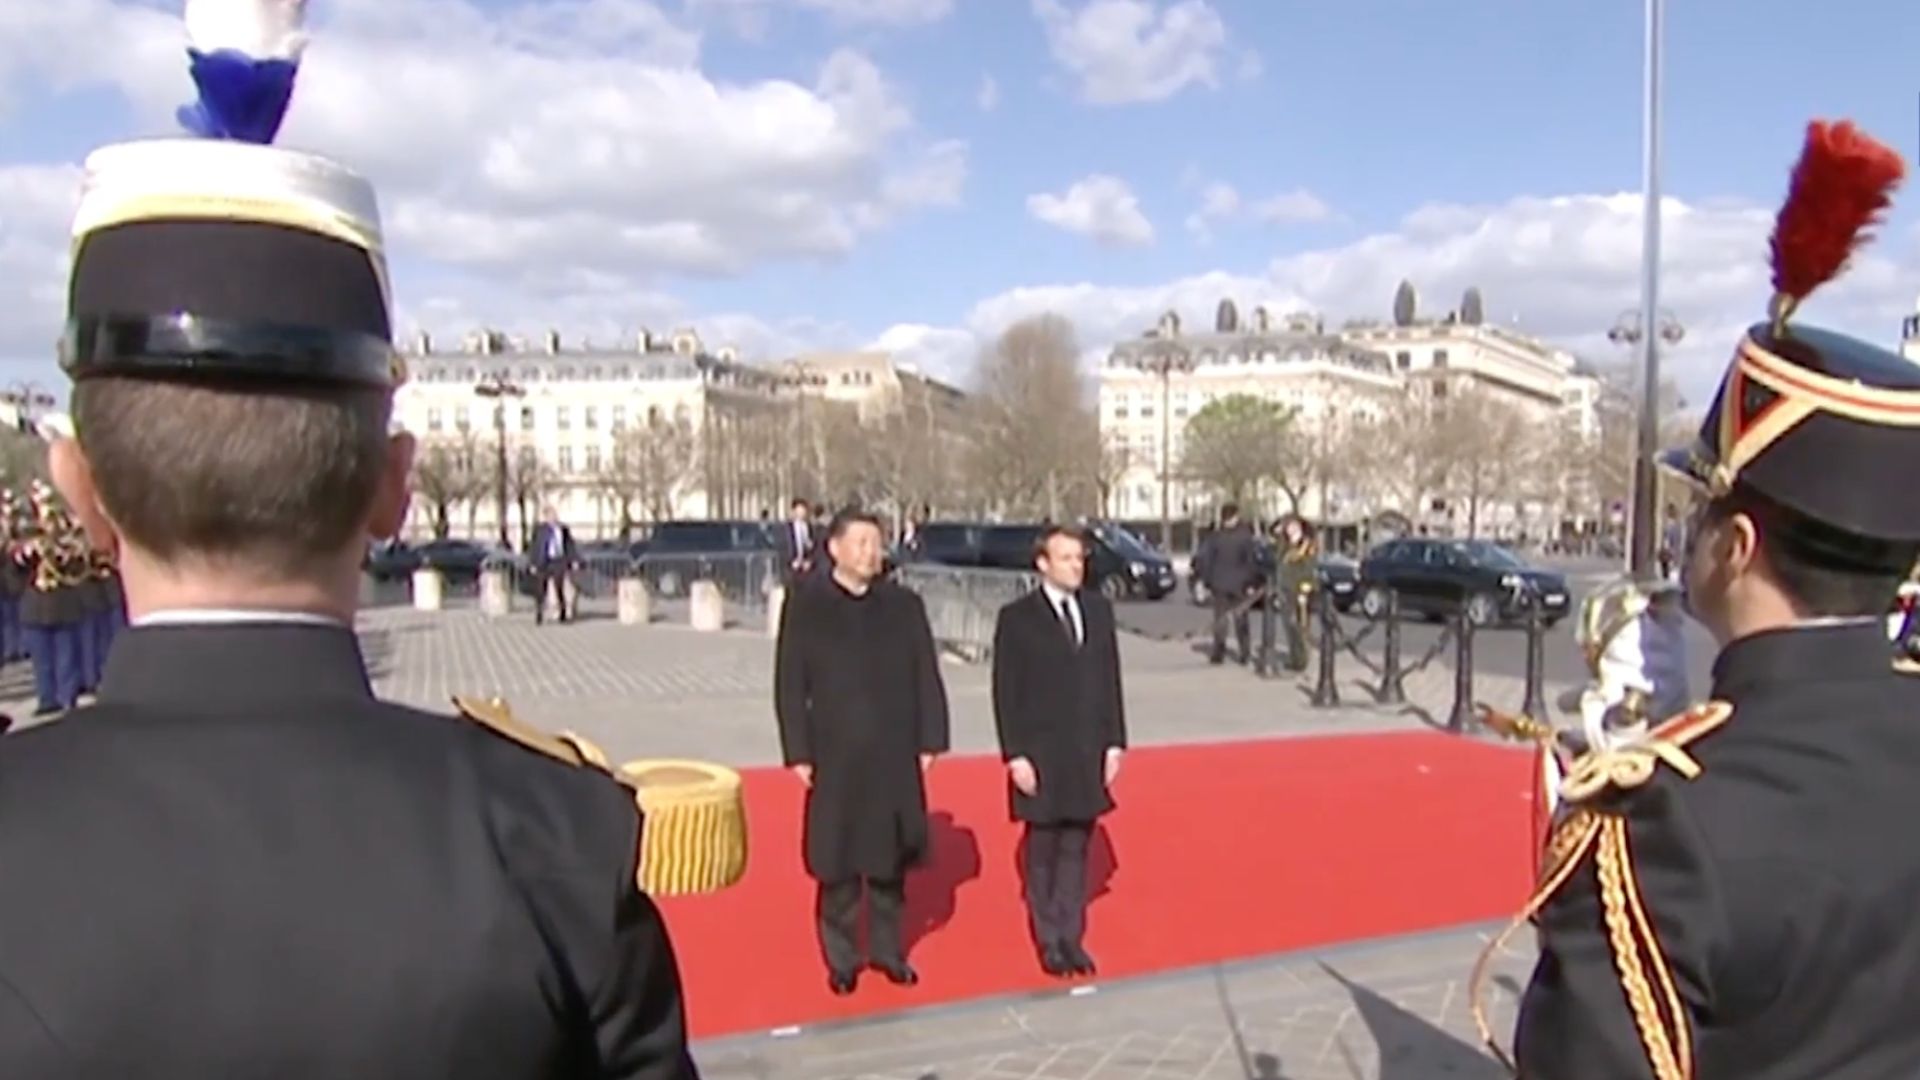 Xi Jinping and Emmanuel Macron in Paris in 2019. /CGTN